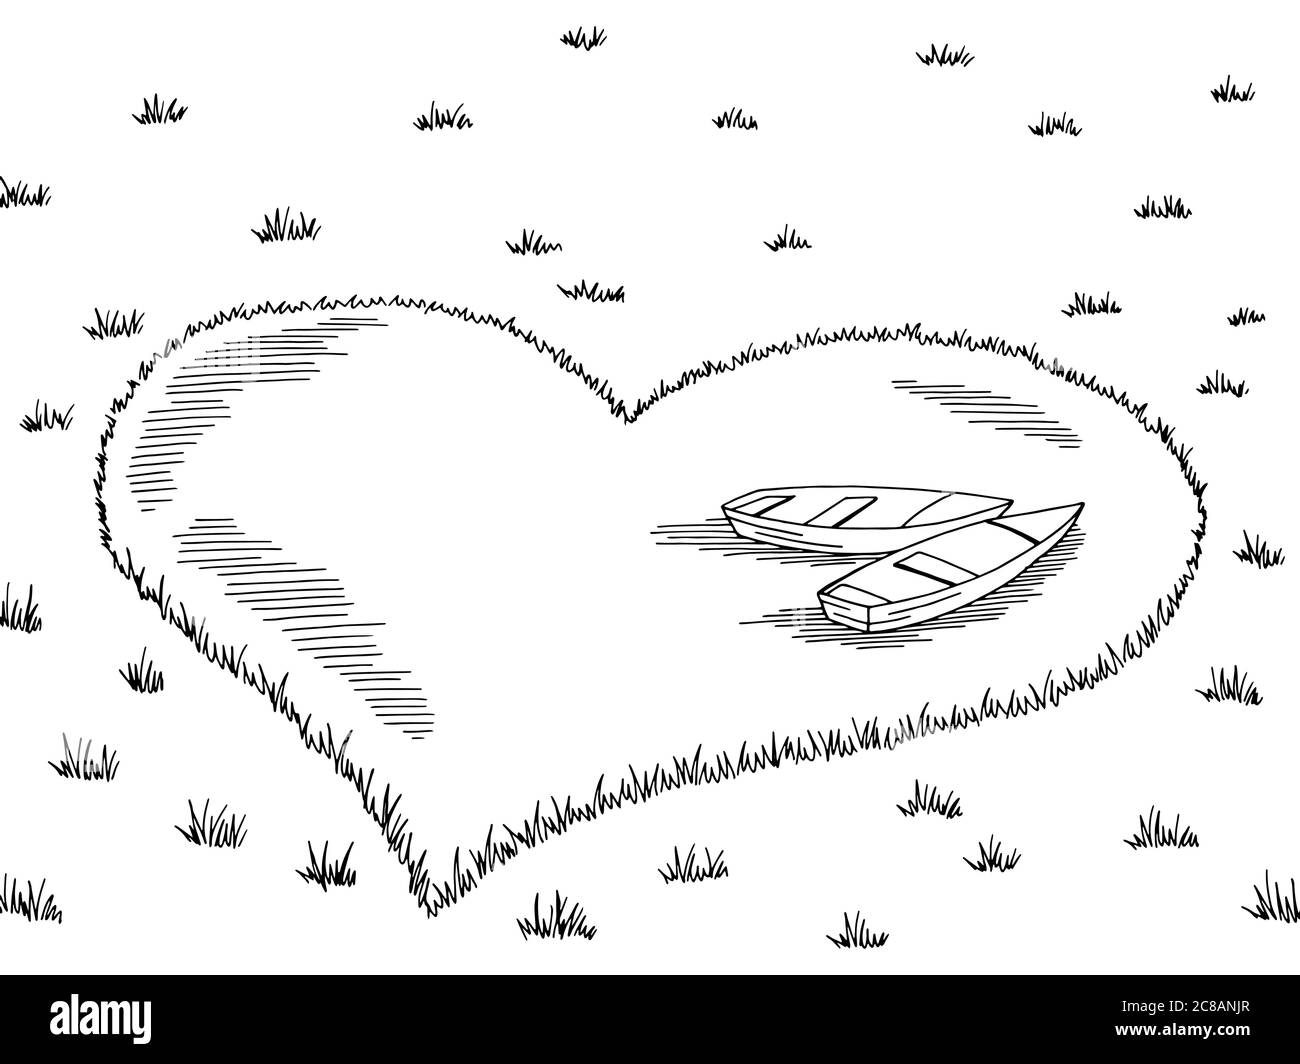 Lac coeur forme bateaux graphiques noir blanc paysage esquisse illustration vecteur Illustration de Vecteur